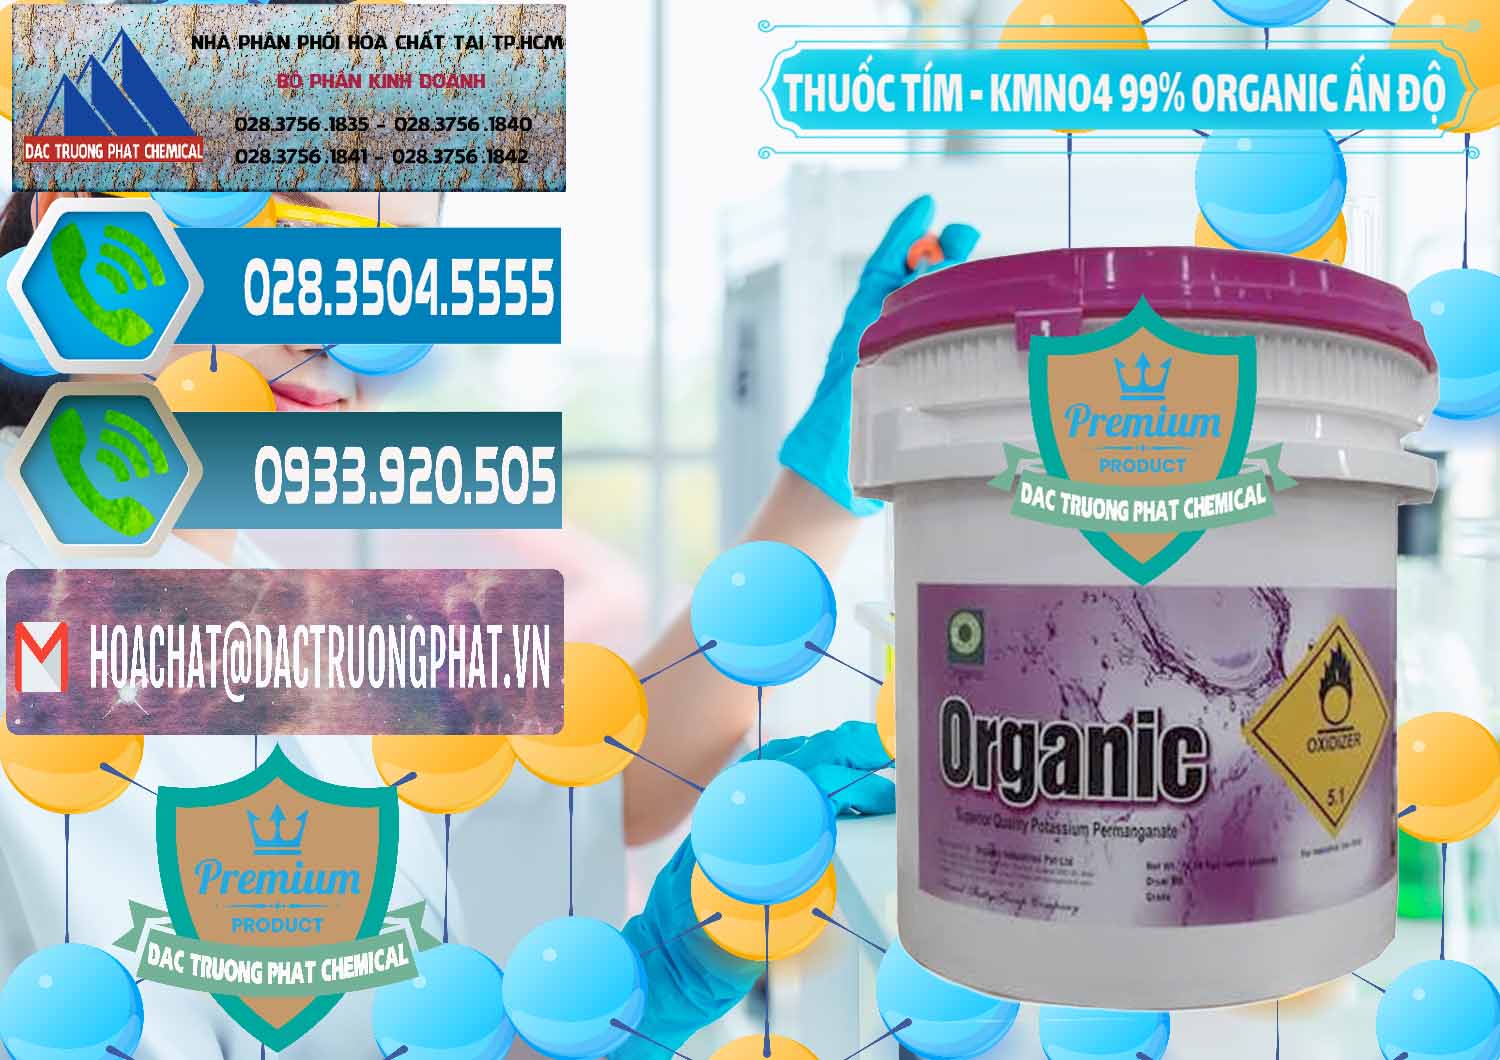 Chuyên cung cấp ( bán ) Thuốc Tím - KMNO4 99% Organic Ấn Độ India - 0216 - Nơi chuyên cung cấp ( kinh doanh ) hóa chất tại TP.HCM - congtyhoachat.net